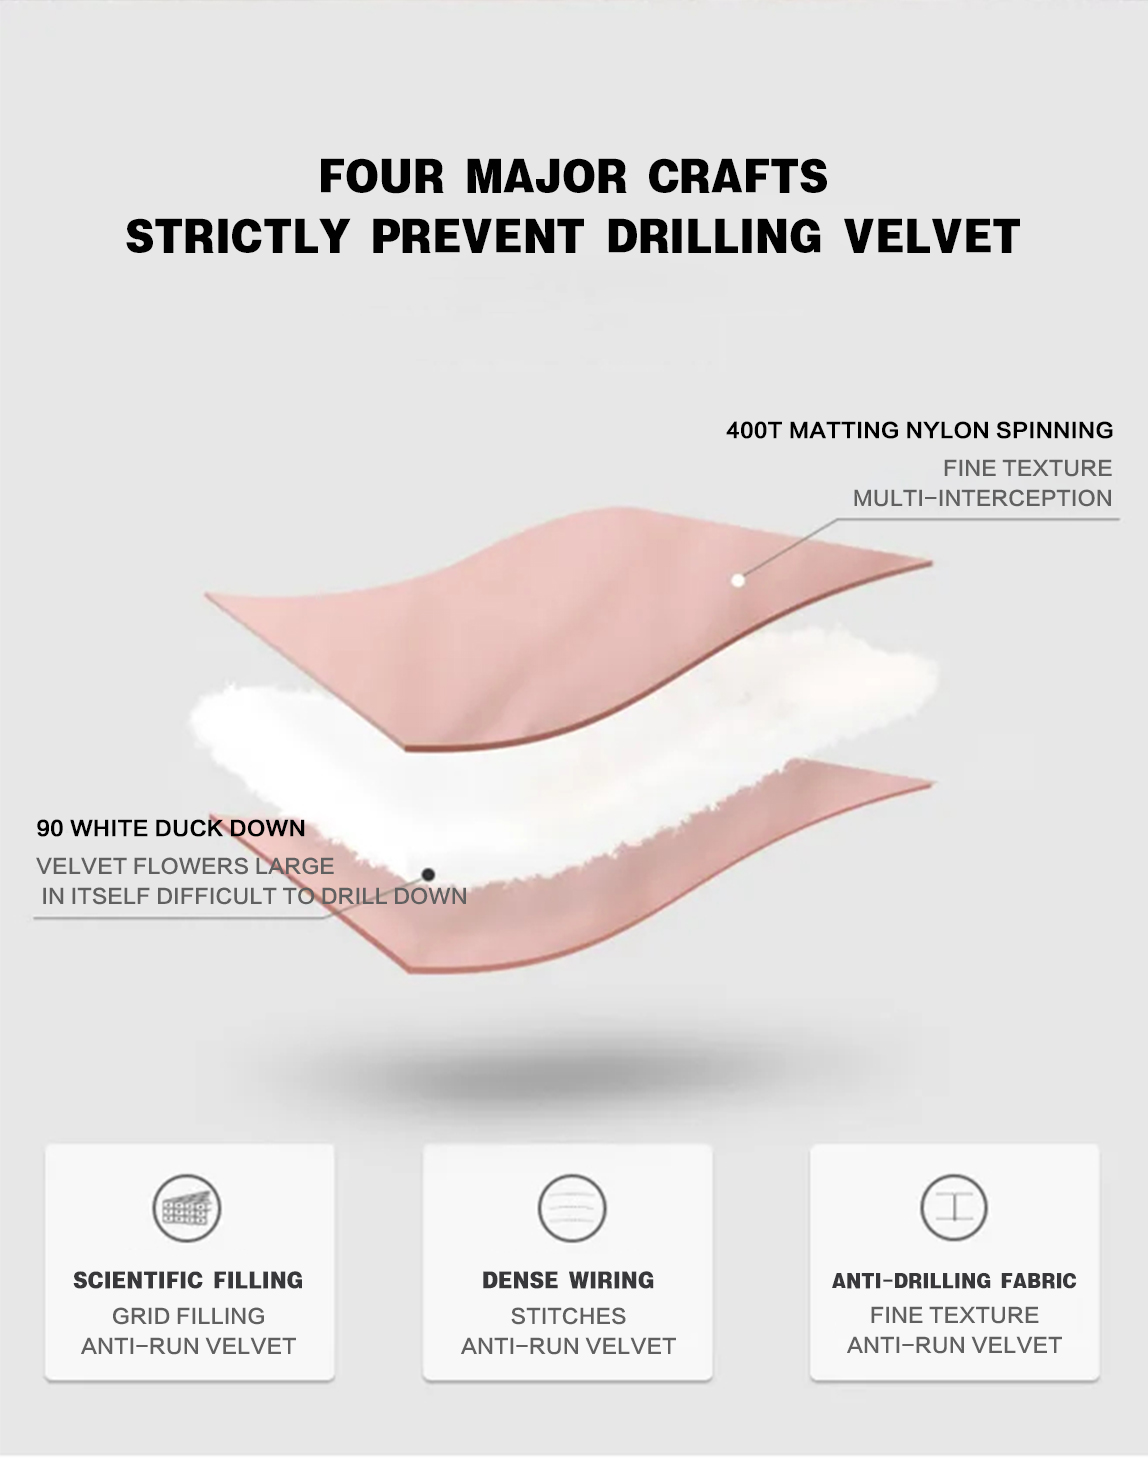 The four major processes do not drill velvet